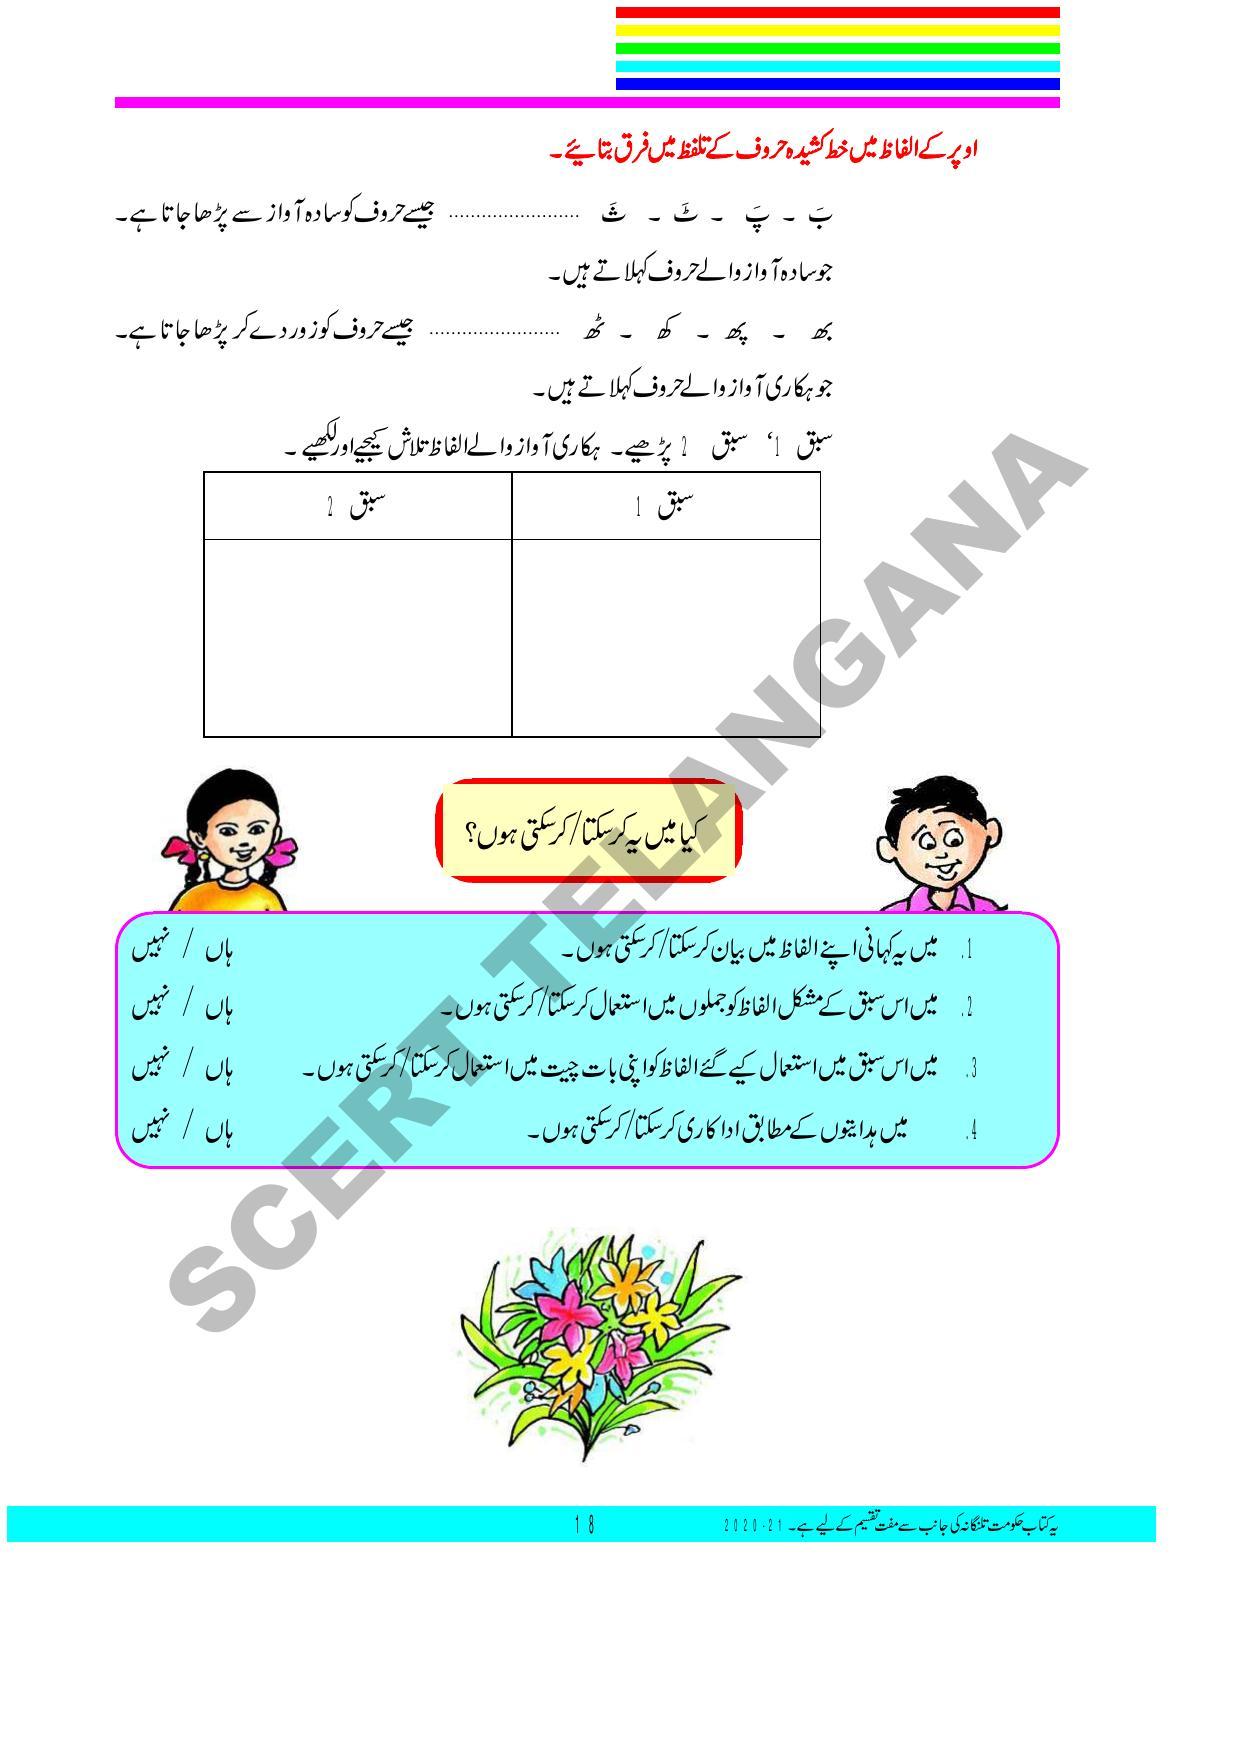 TS SCERT Class 3 First Language(Urdu Medium) Text Book - Page 32